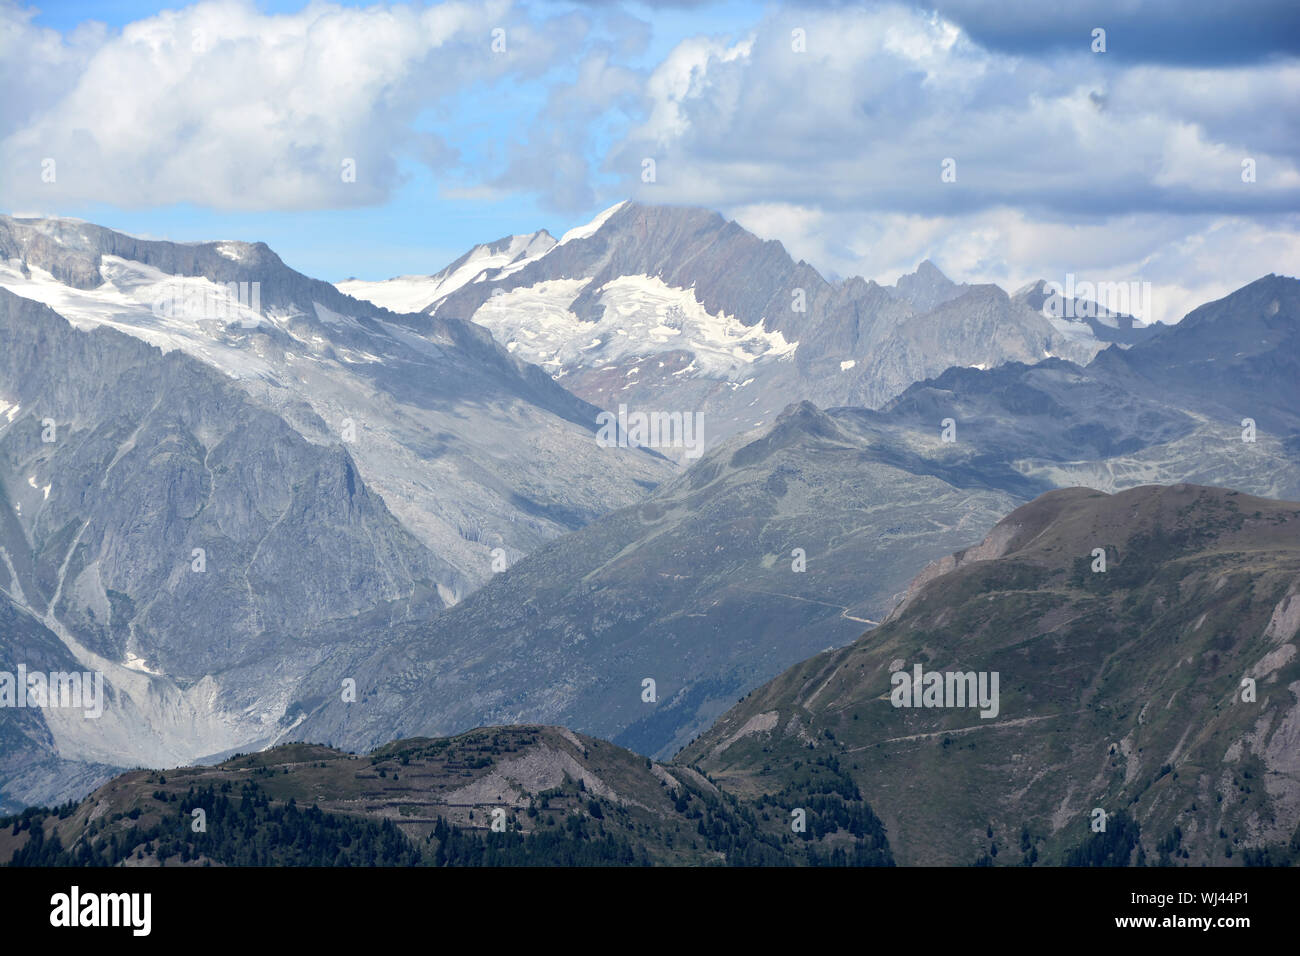 Die Gamlihorn in den Berner Alpen, Schweiz, gesehen von der italienischen Schweizer Grenze am Chriegal Pass Stockfoto